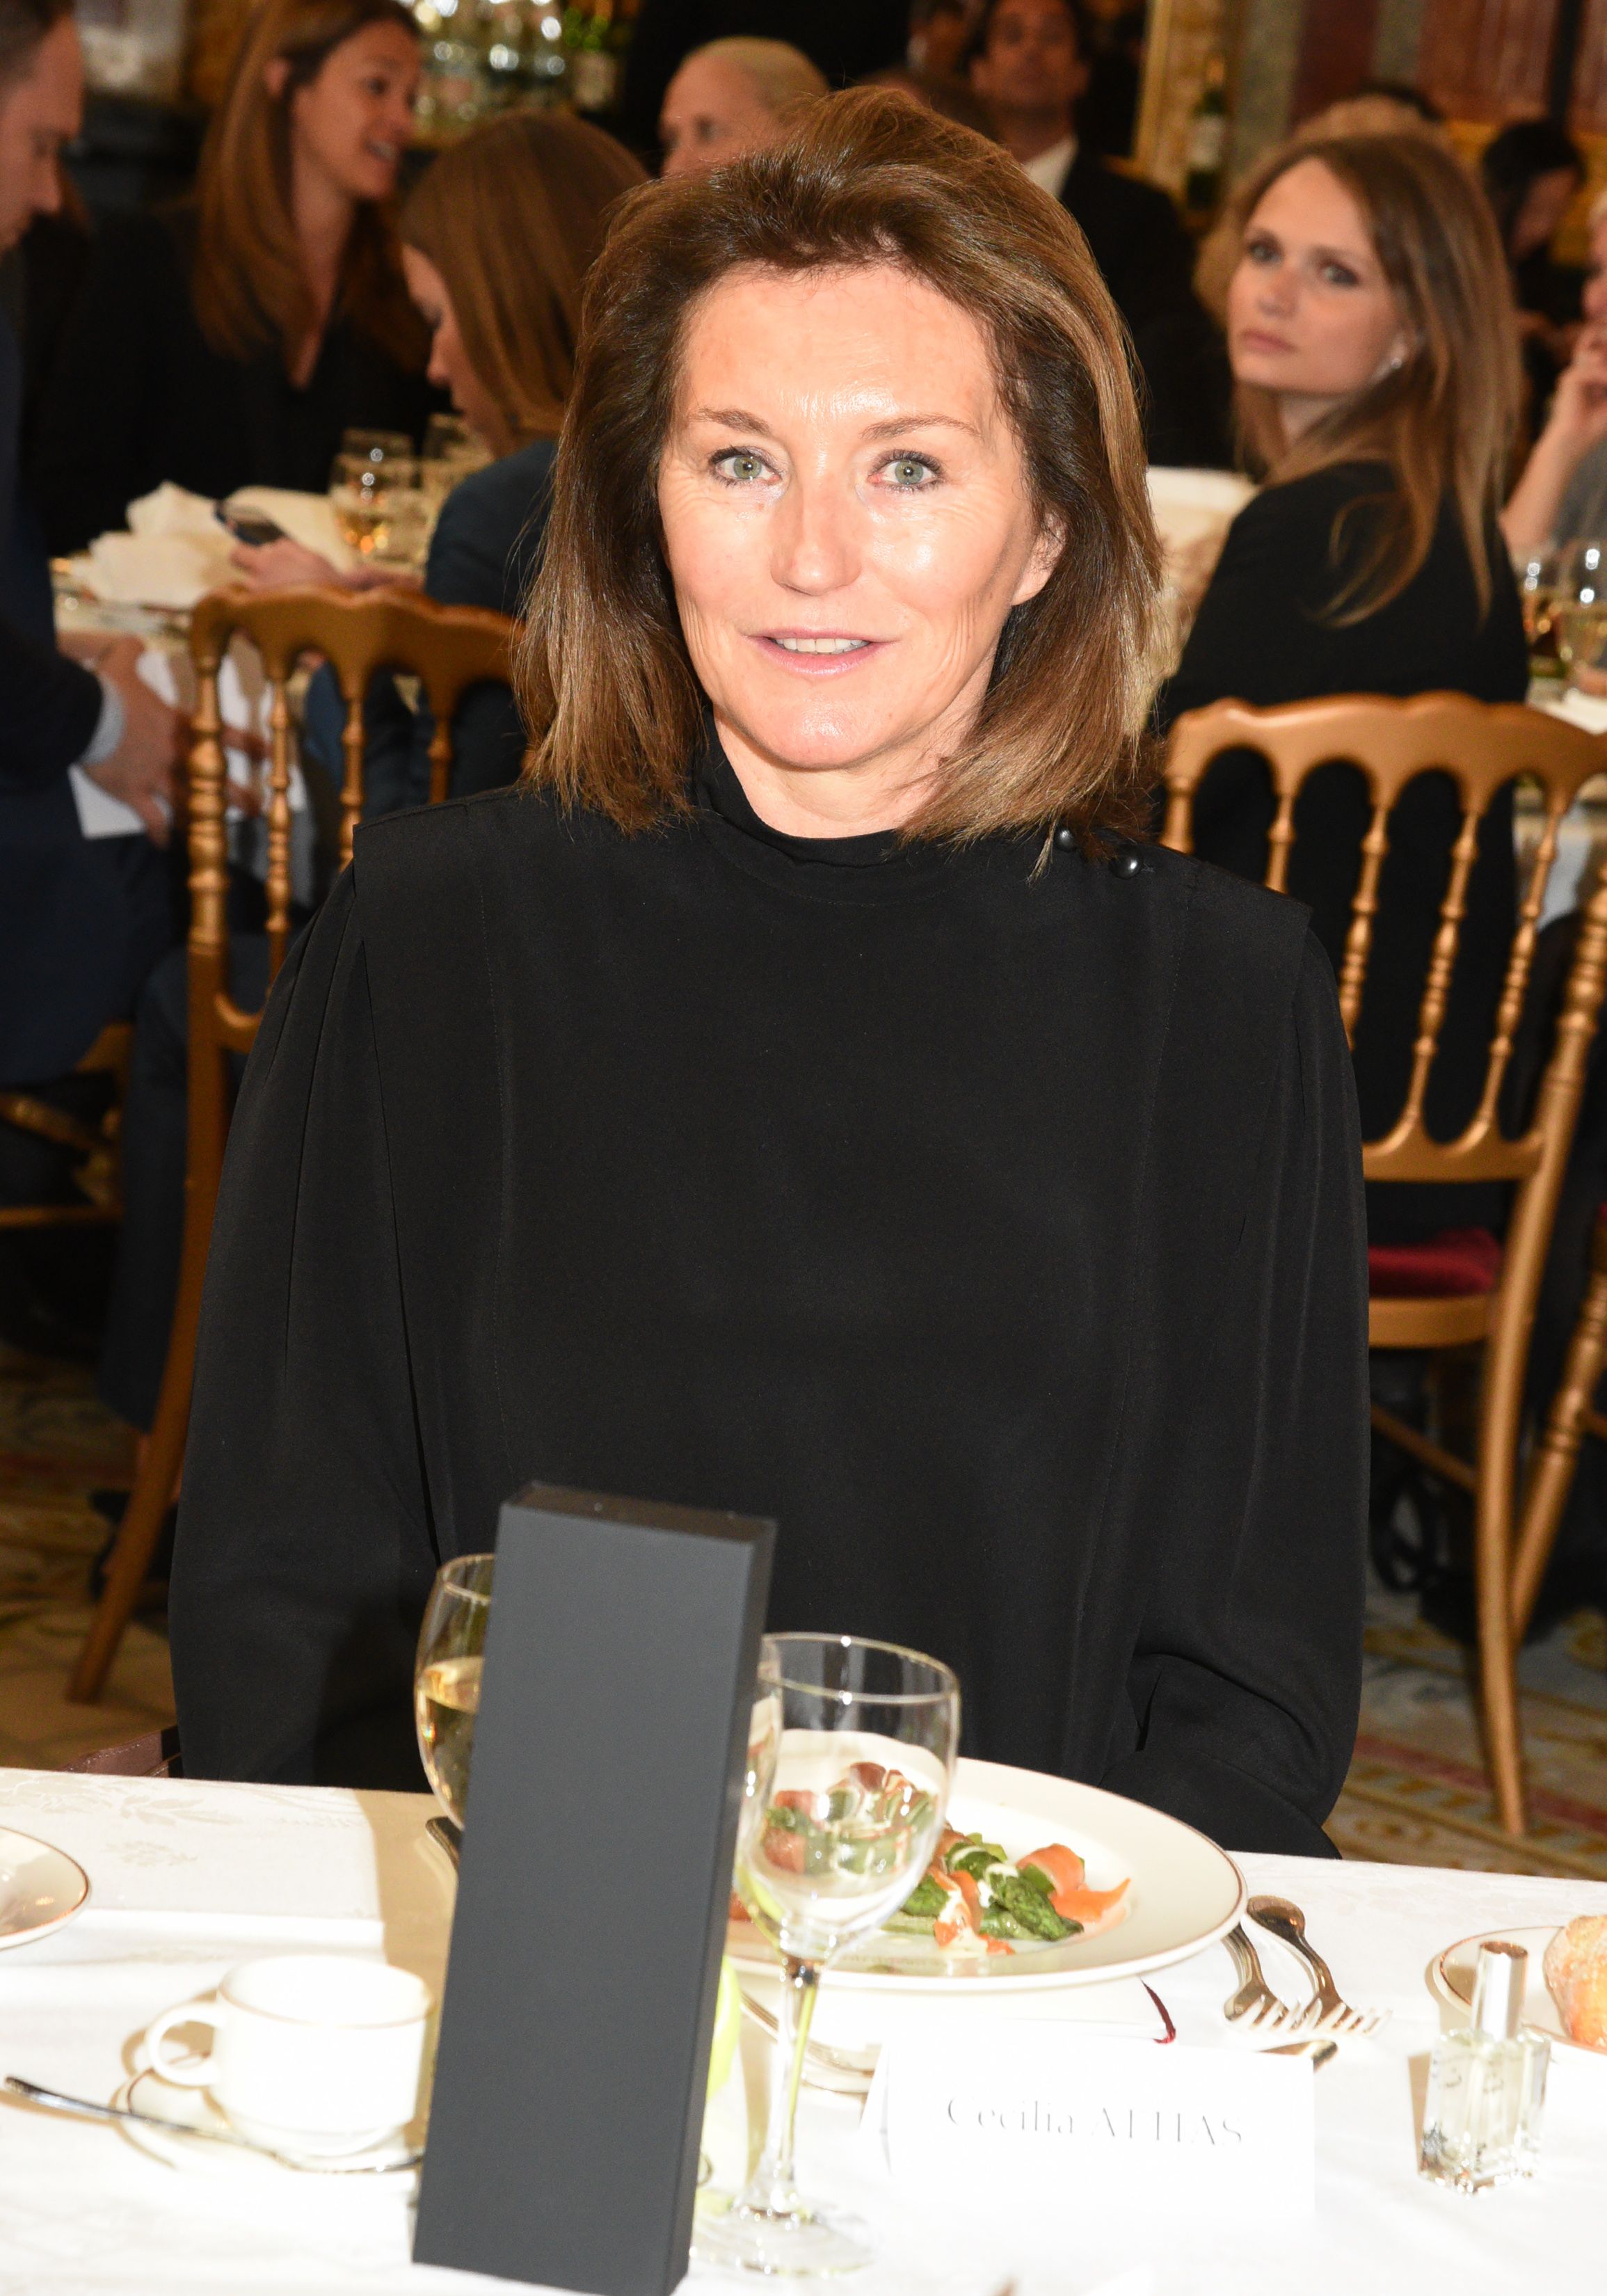 Cecilia Attias à l'Hôtel Intercontinental le 28 avril 2017 à Paris, France. | Photo : Getty Images